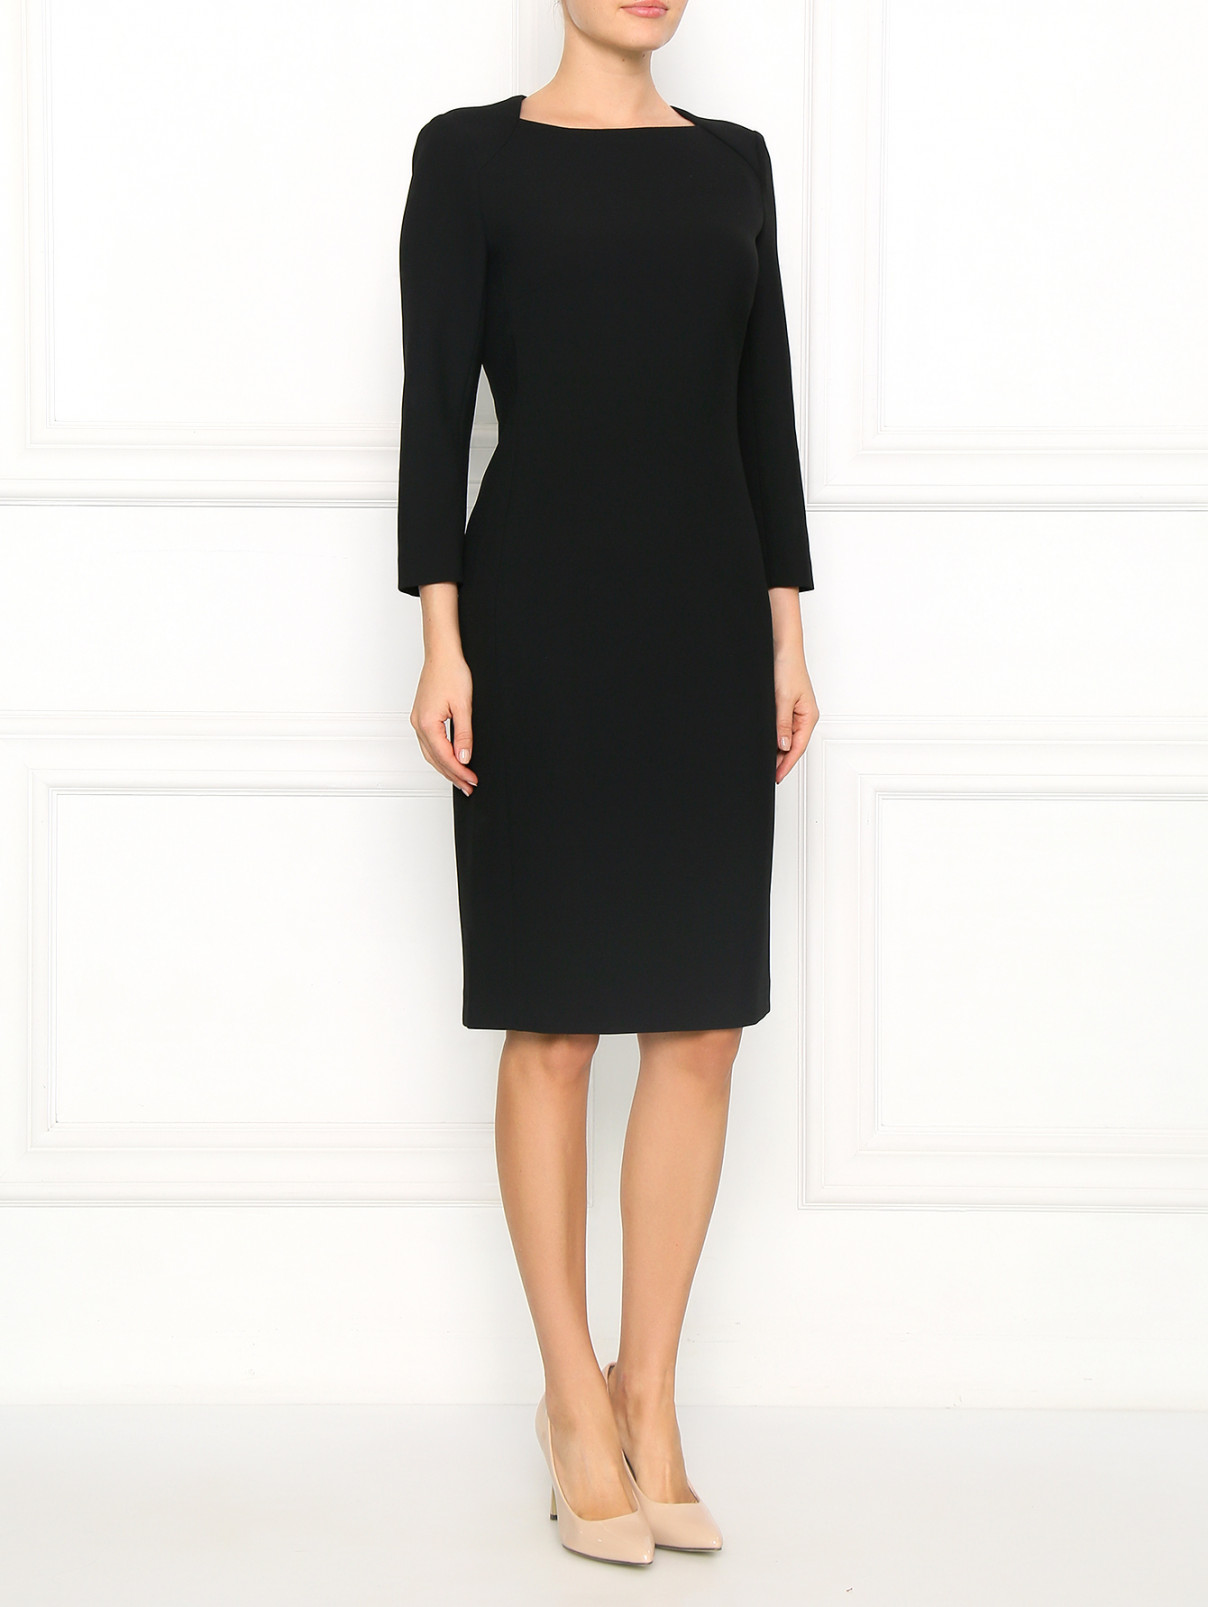 Платье-футляр с вырезом на спине Tara Jarmon  –  Модель Общий вид  – Цвет:  Черный